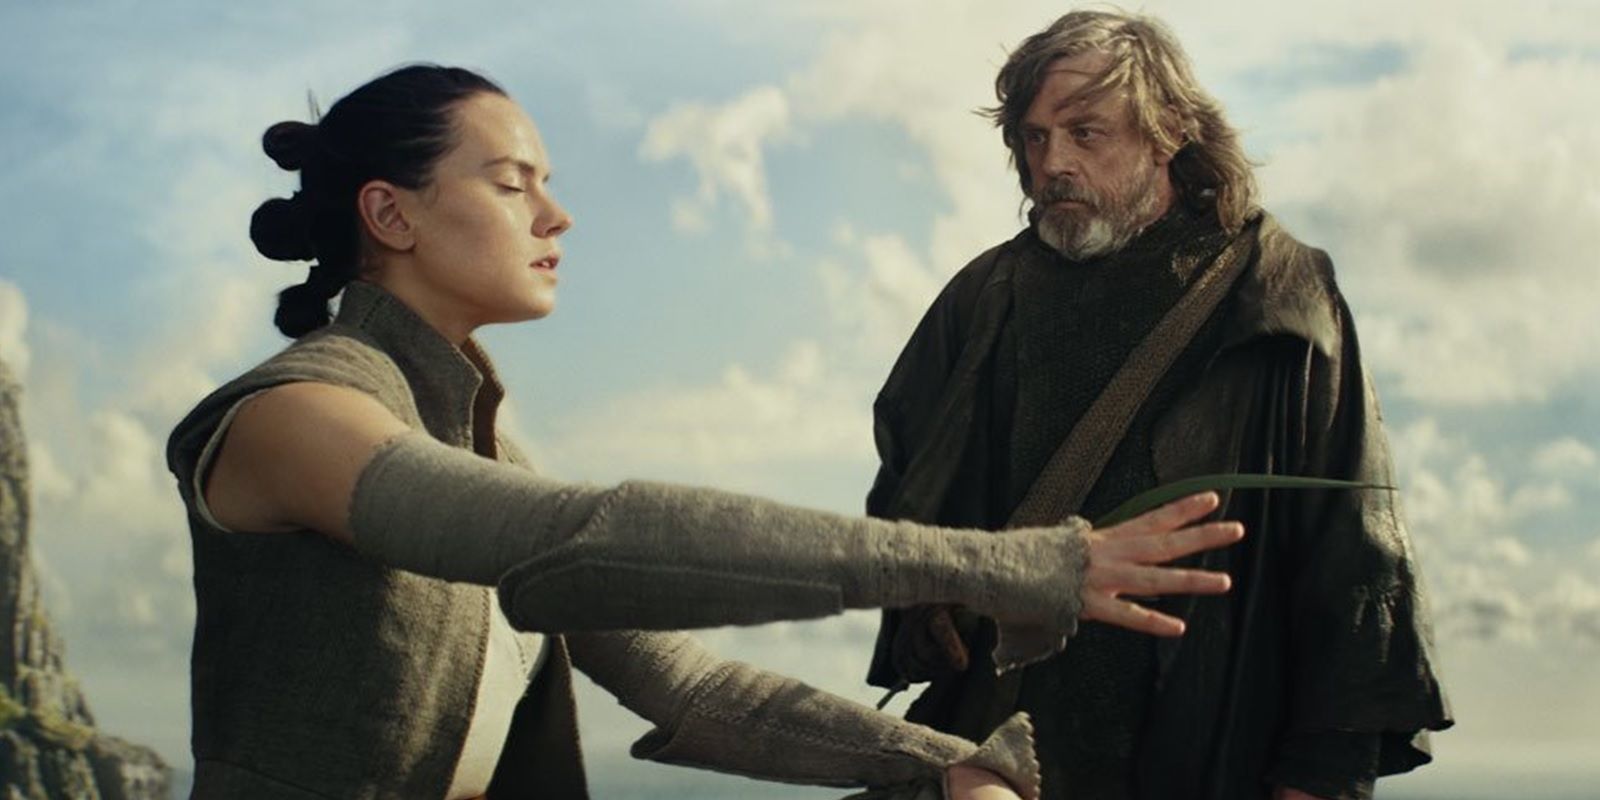 Luke training Rey as a Jedi in The Last Jedi.